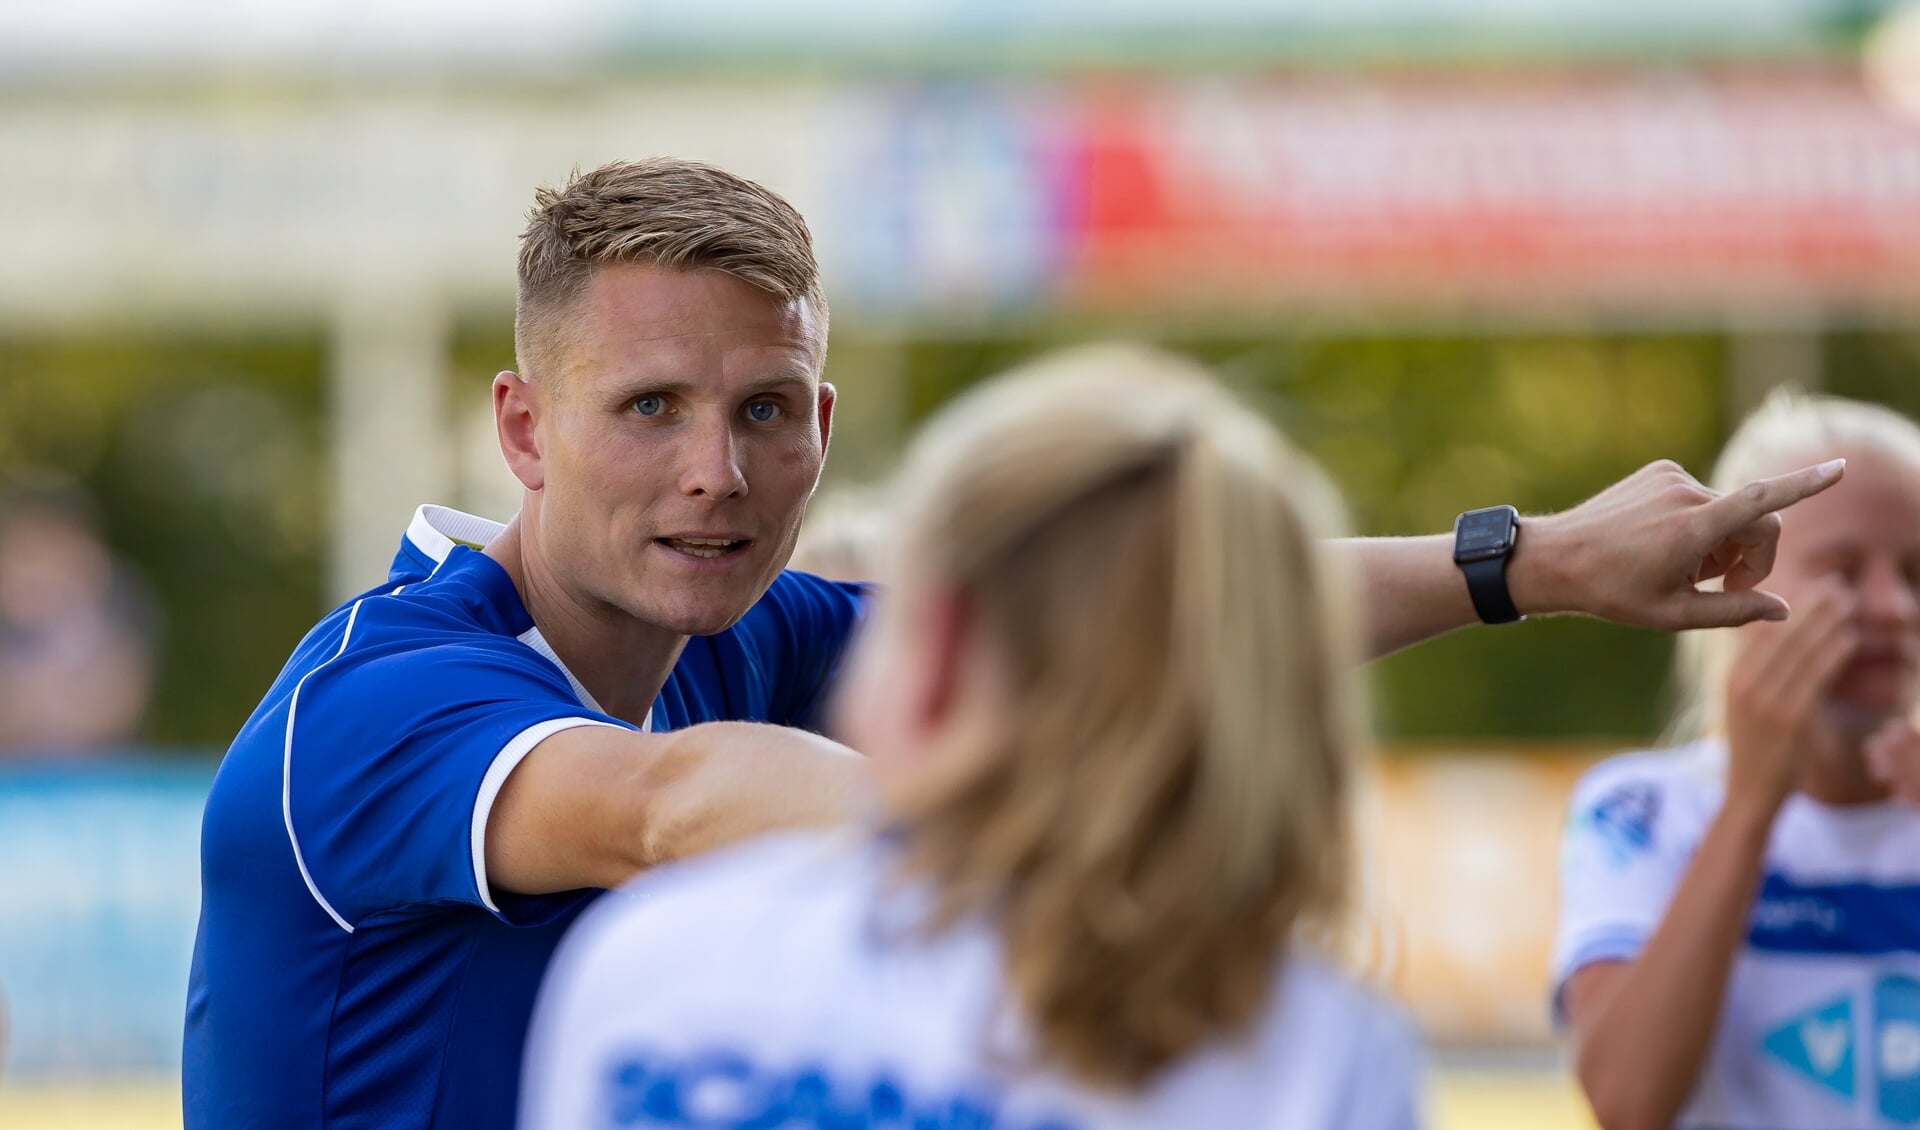 PEC Zwolle Vrouwen trainer Olivier Amelink coacht druk. "We willen als team dicht bij elkaar spelen."